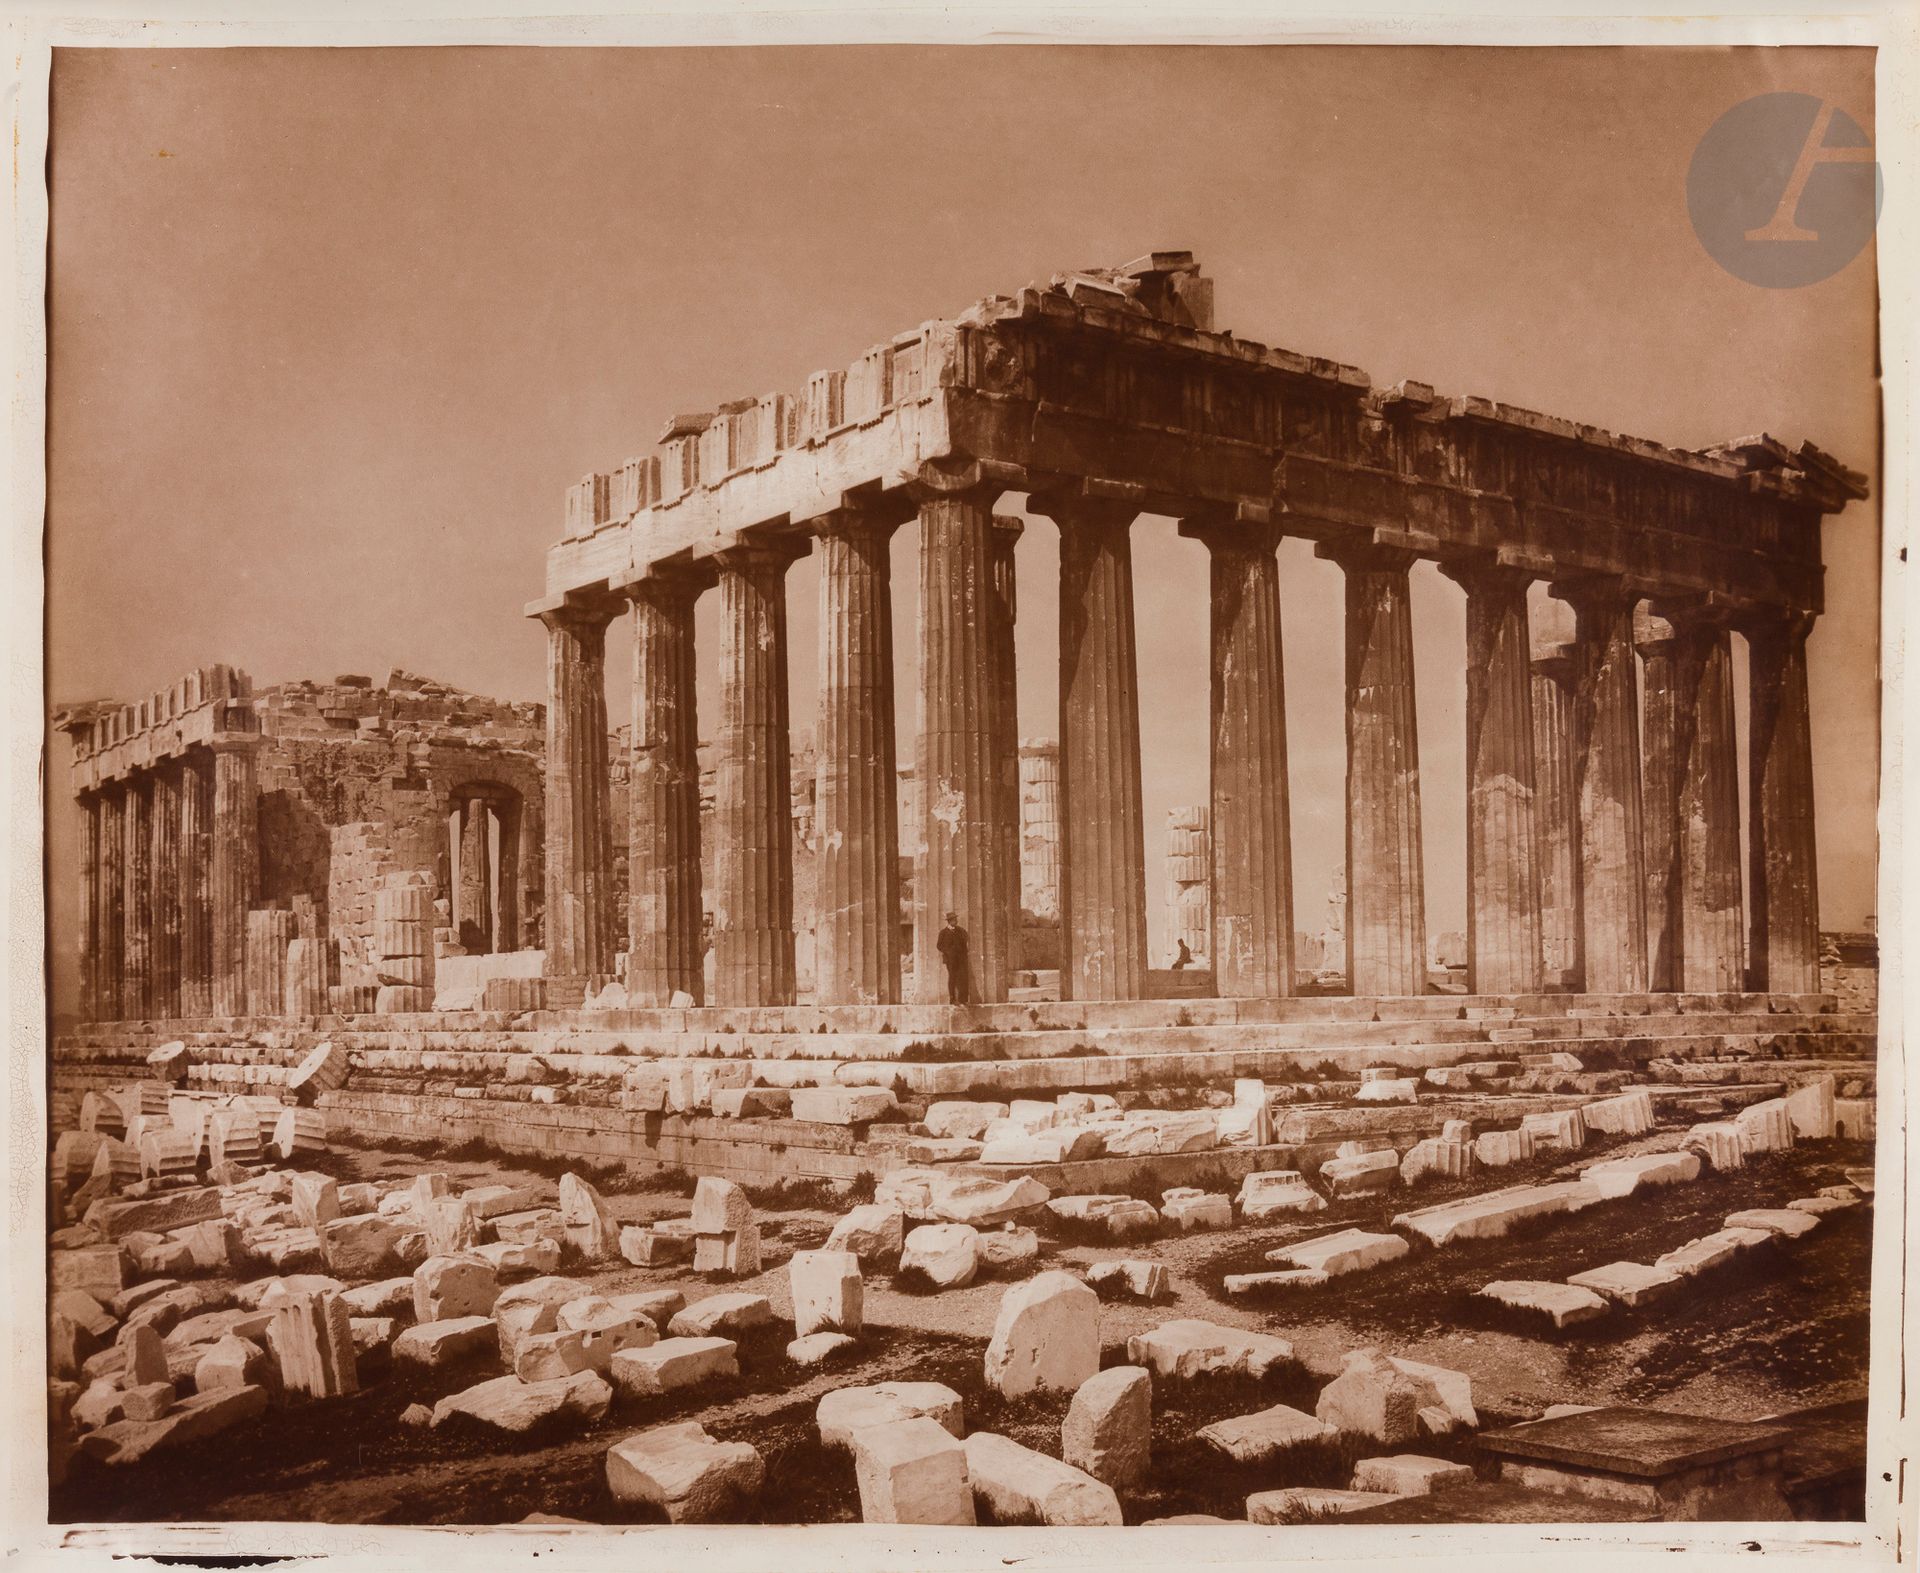 Null Casa Adolphe Braun
Acrópolis de Atenas, c. 1870-1890.
El Partenón. 
Cuatro &hellip;